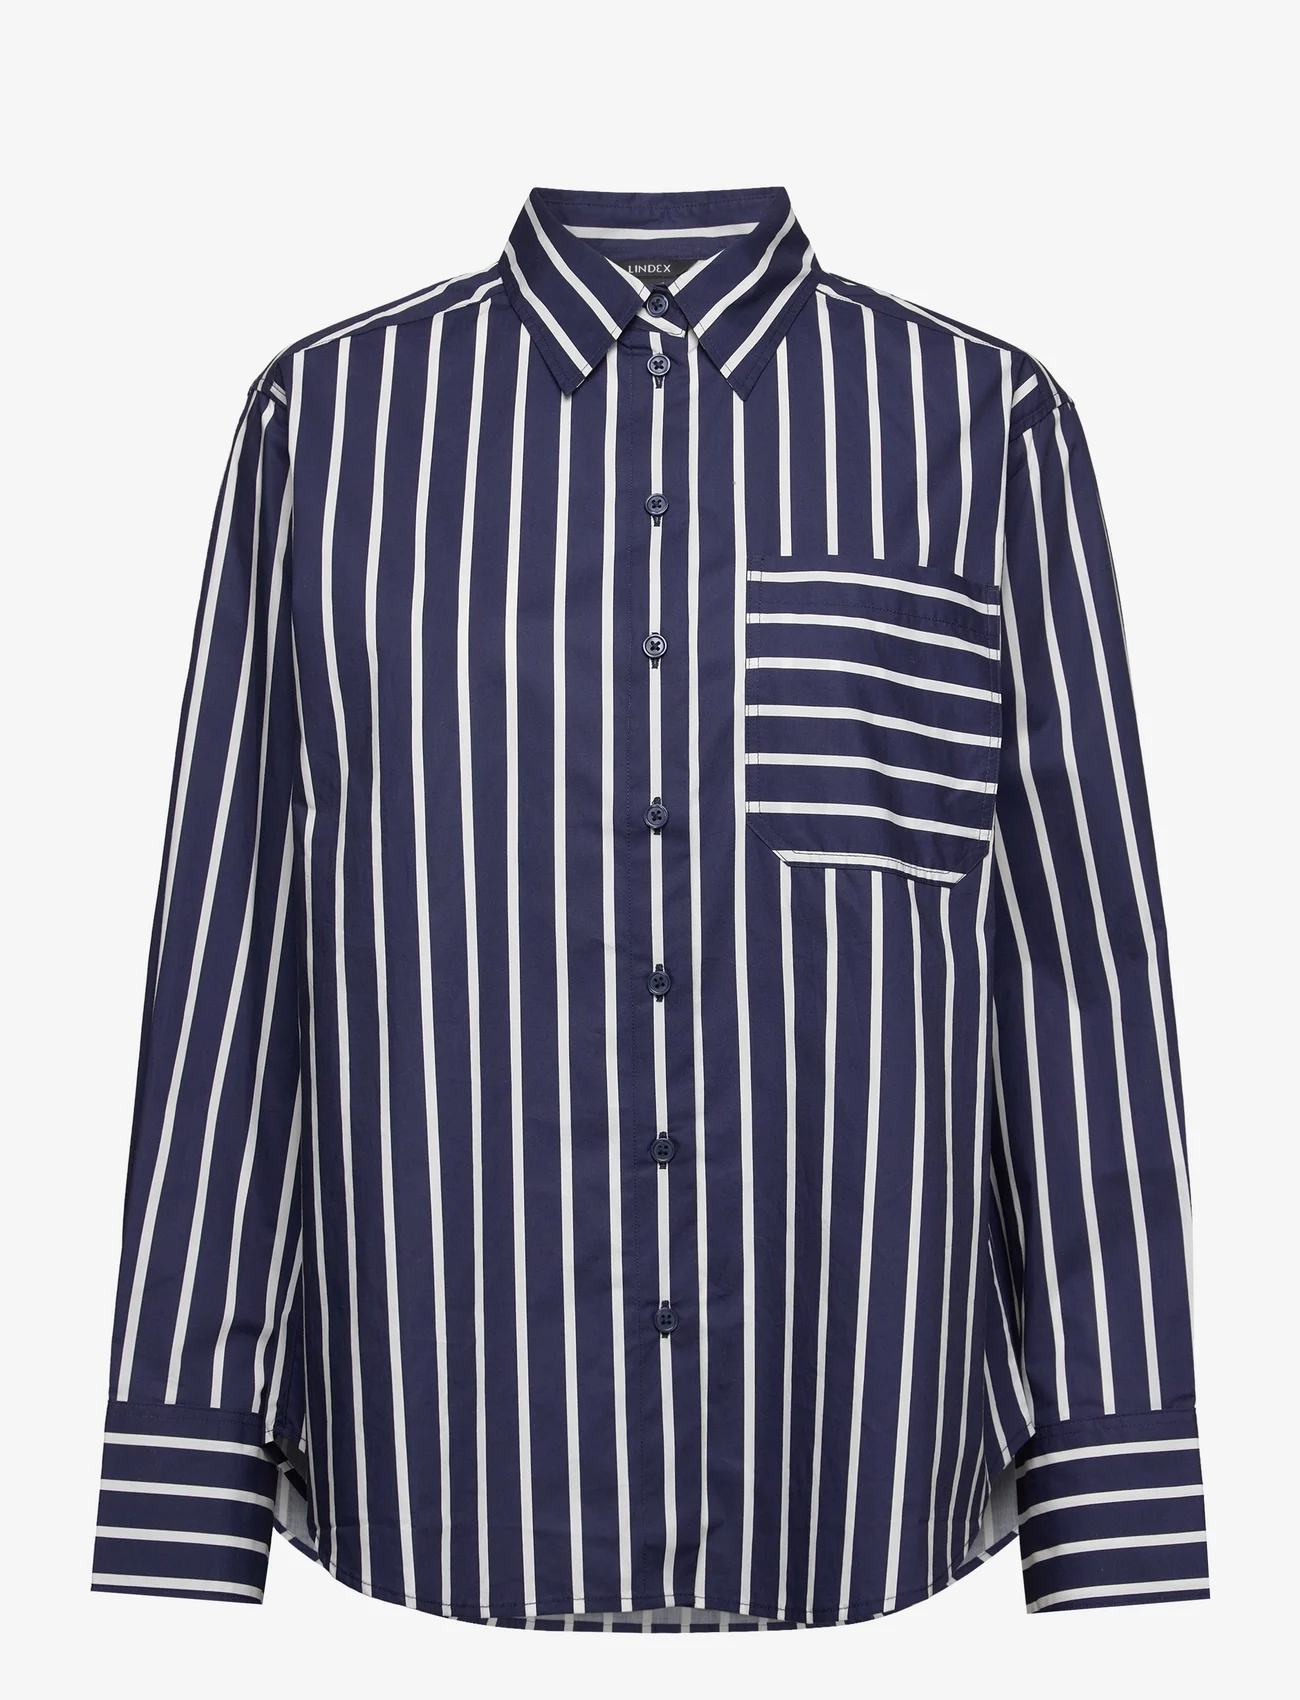 Lindex - Shirt April - marškiniai ilgomis rankovėmis - dark blue - 0